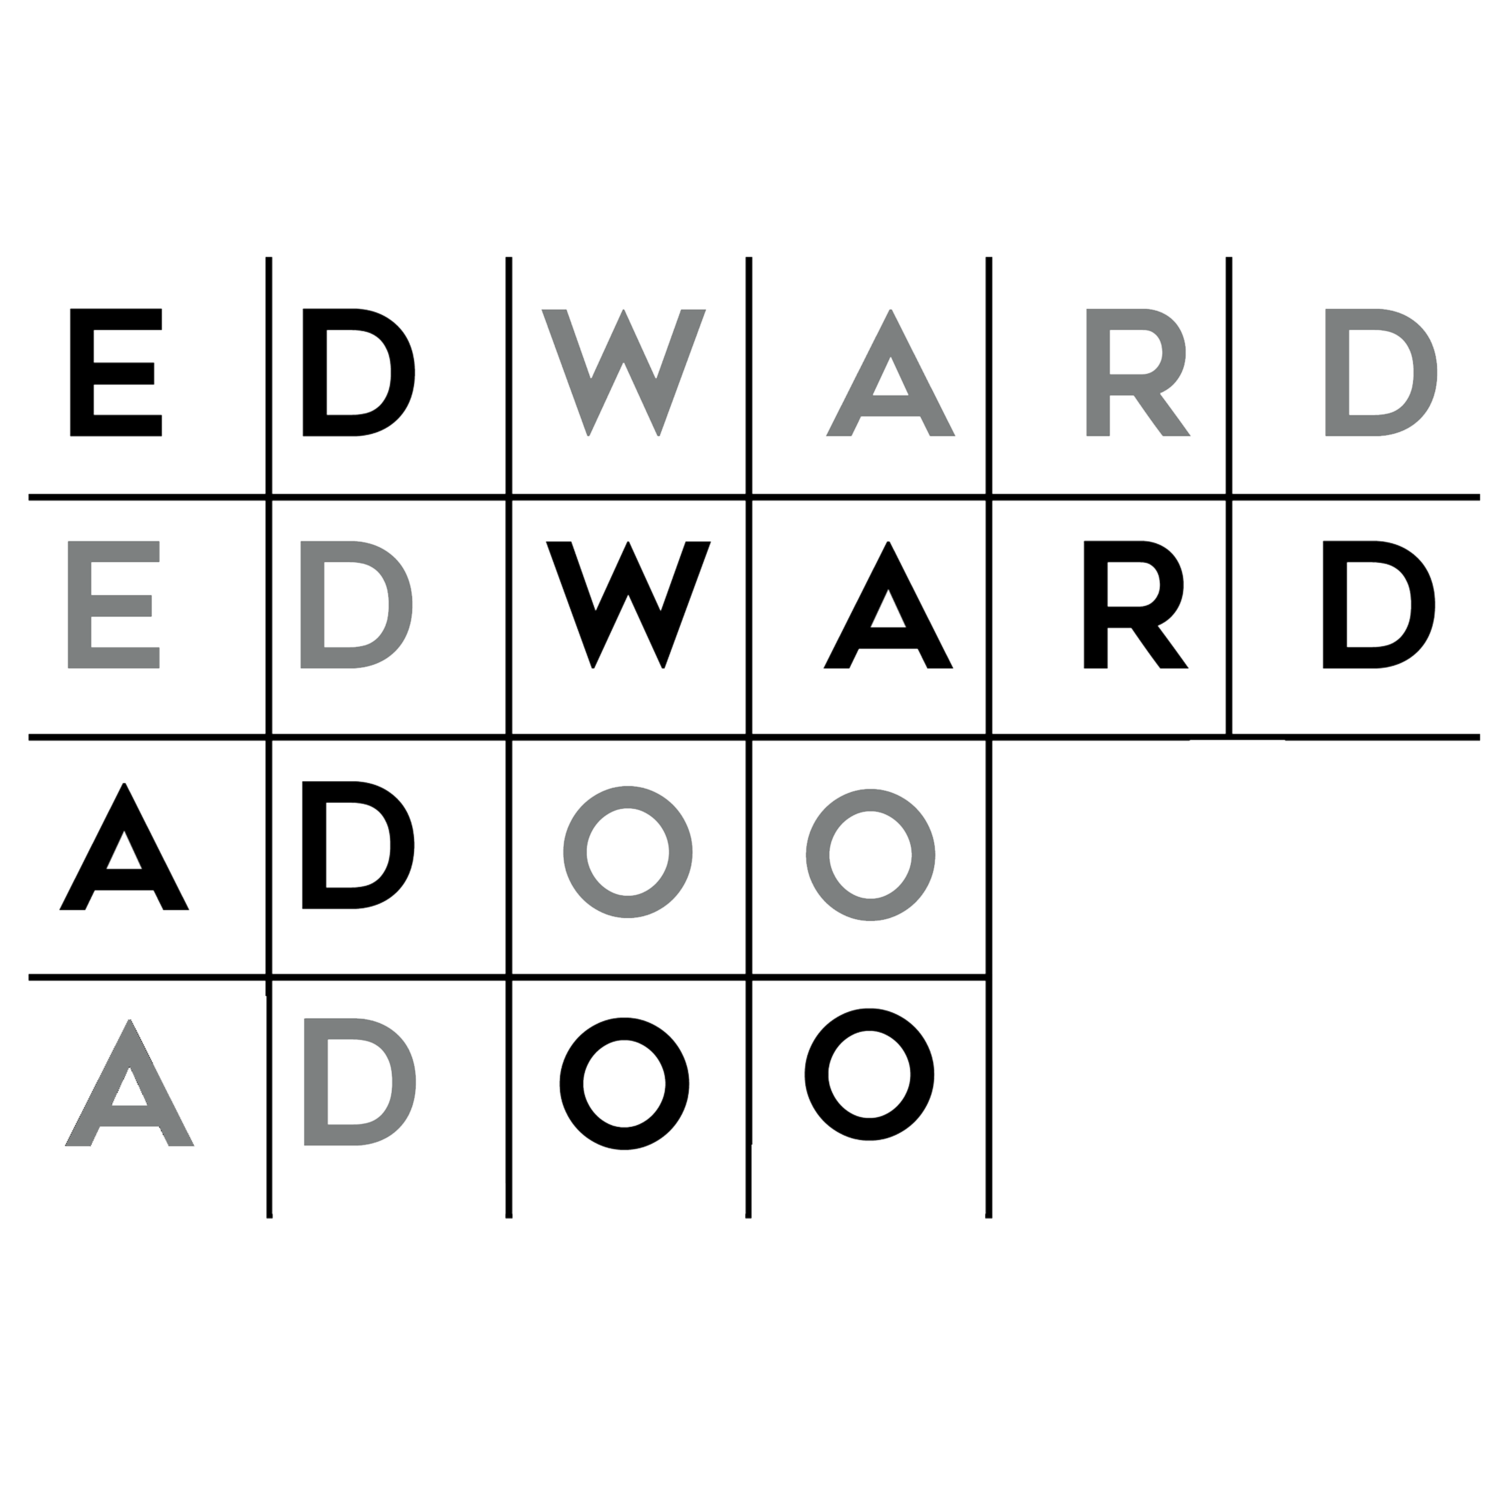 EDWARD ADOO